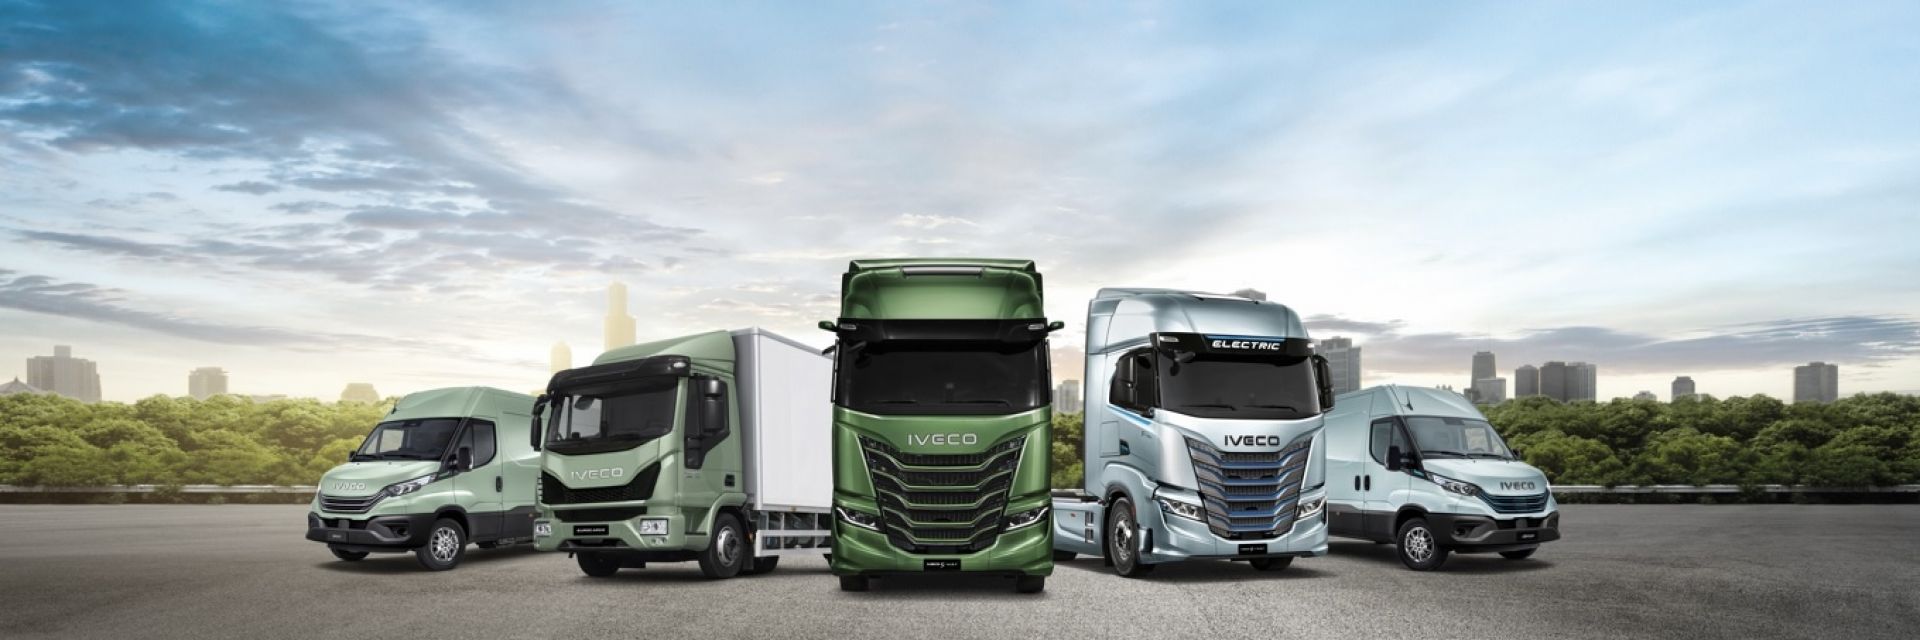 Iveco: Complete range voertuigen van 3.5 ton tot en met 50 ton!